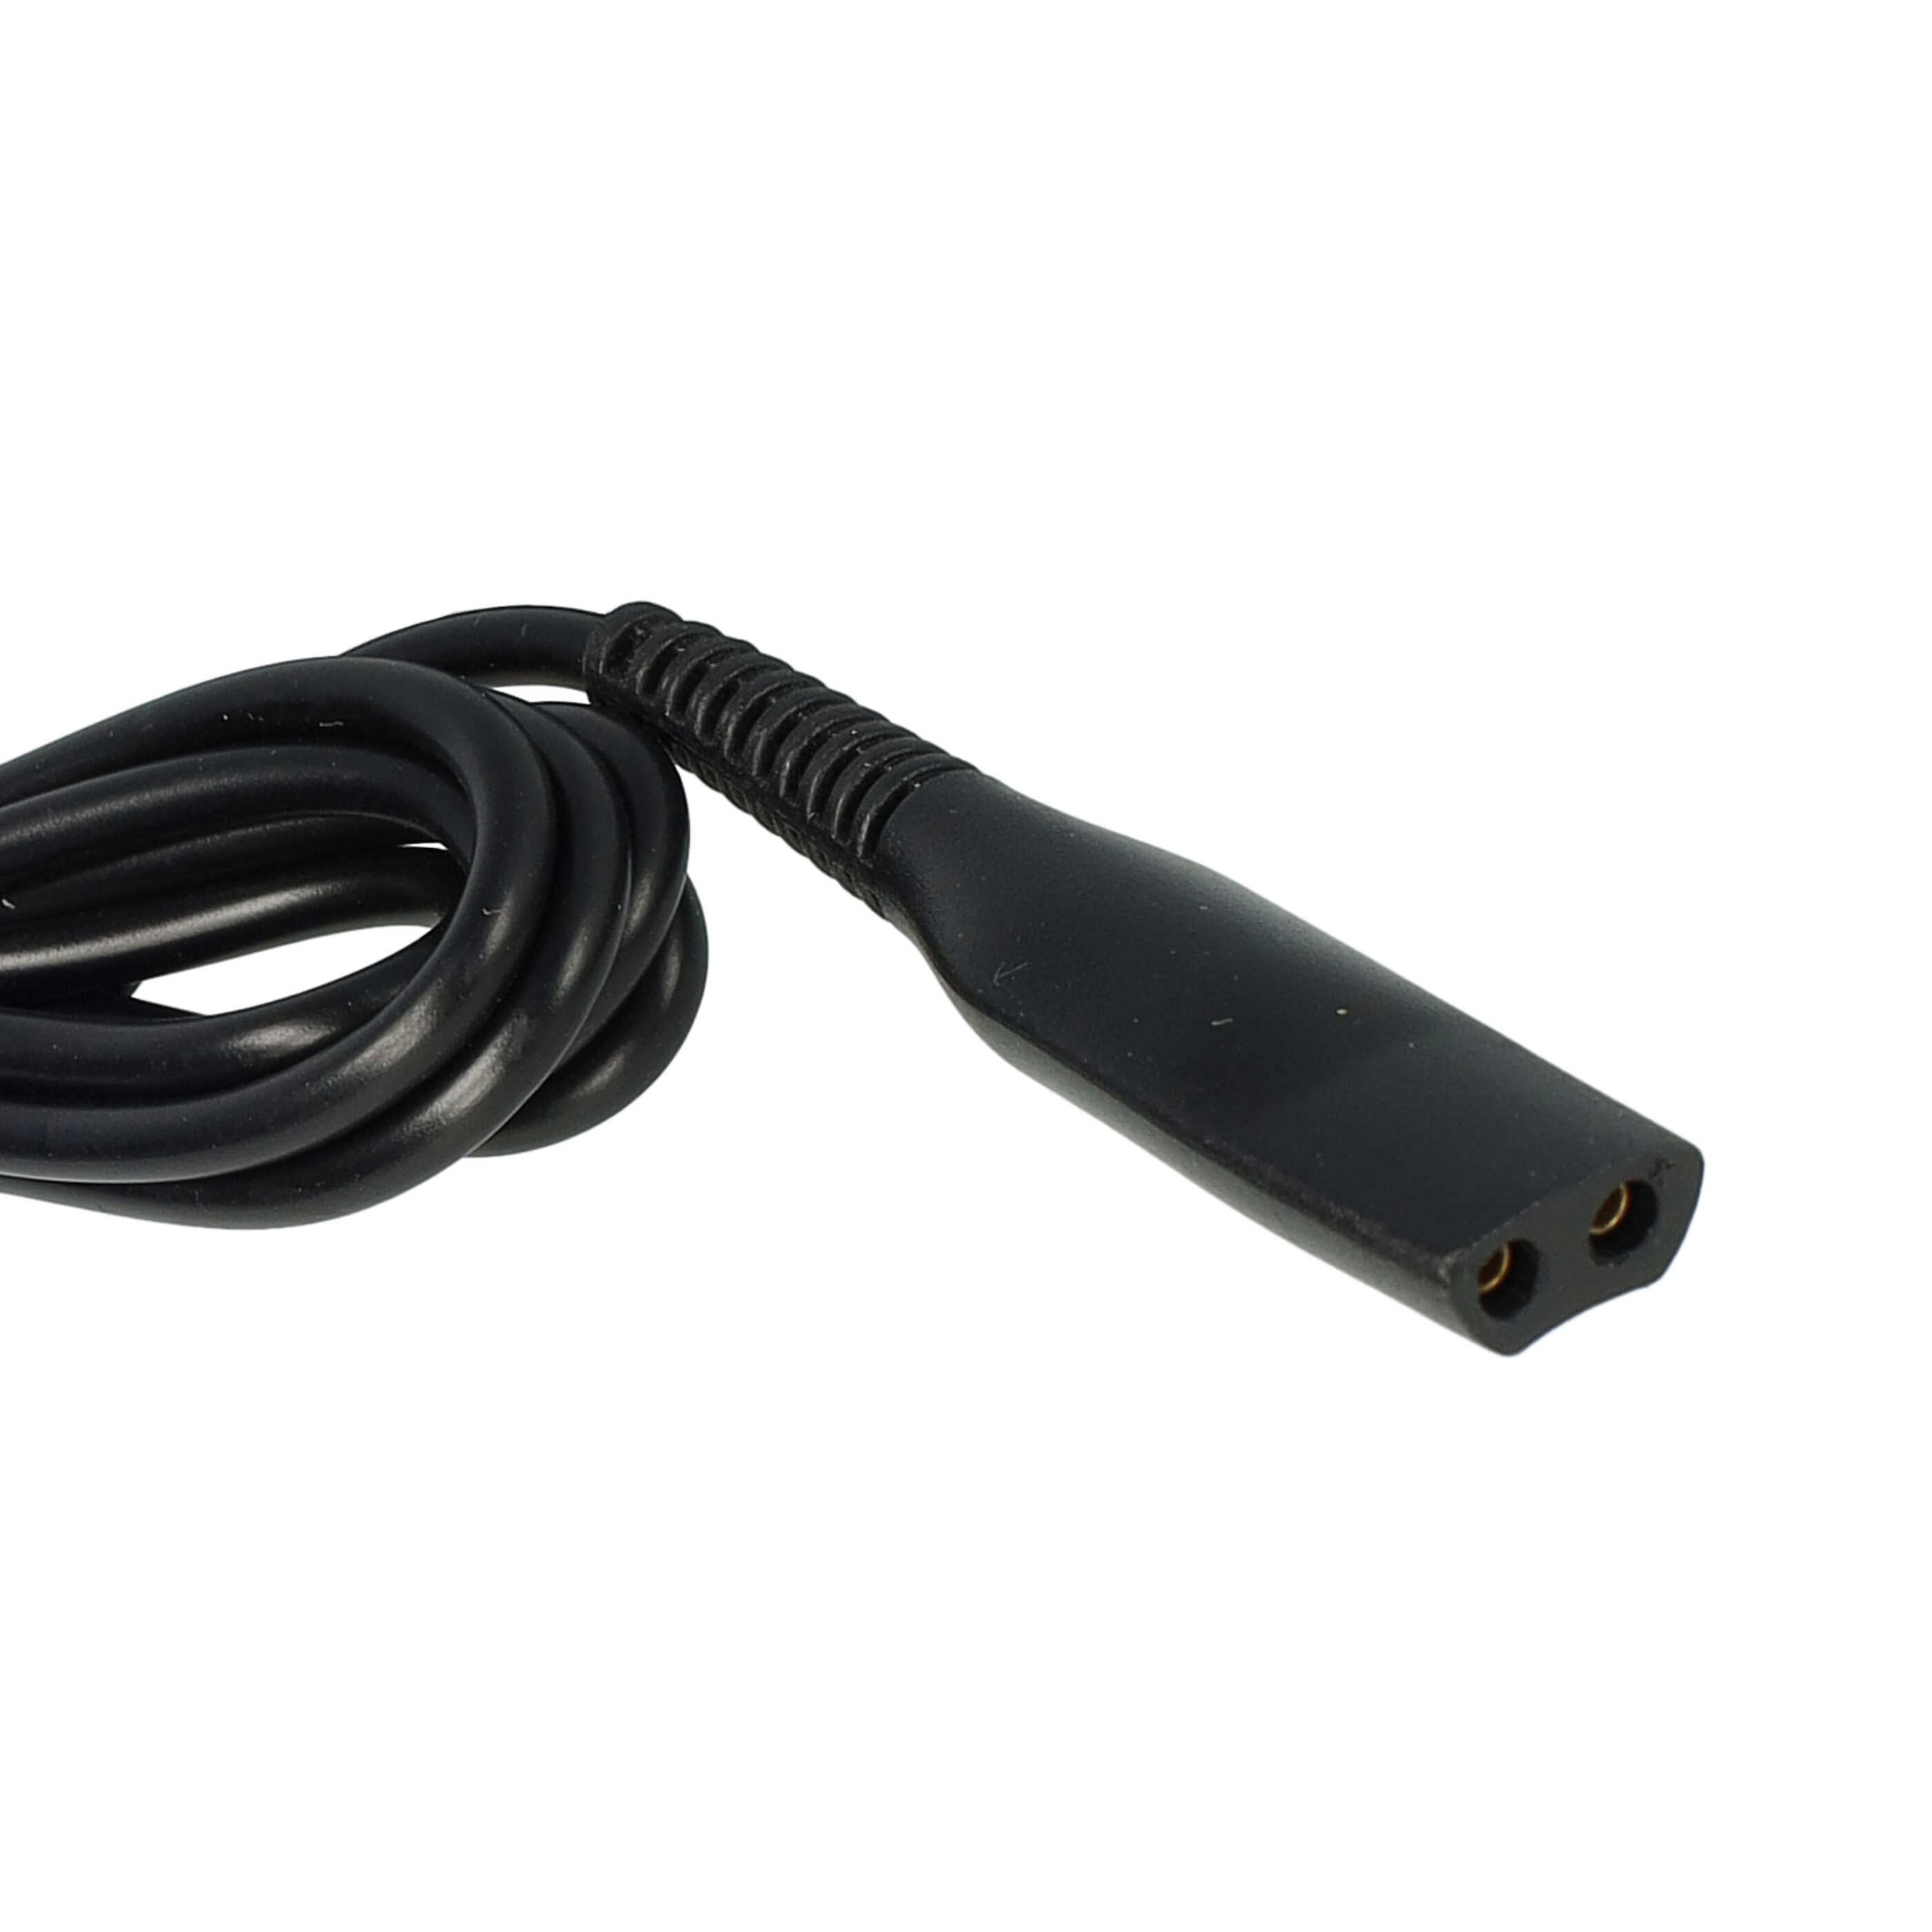 USB Ladekabel passend für Braun, Oral-B HC20 Rasierer, Epilierer, Zahnbürste u.a. - 120 cm